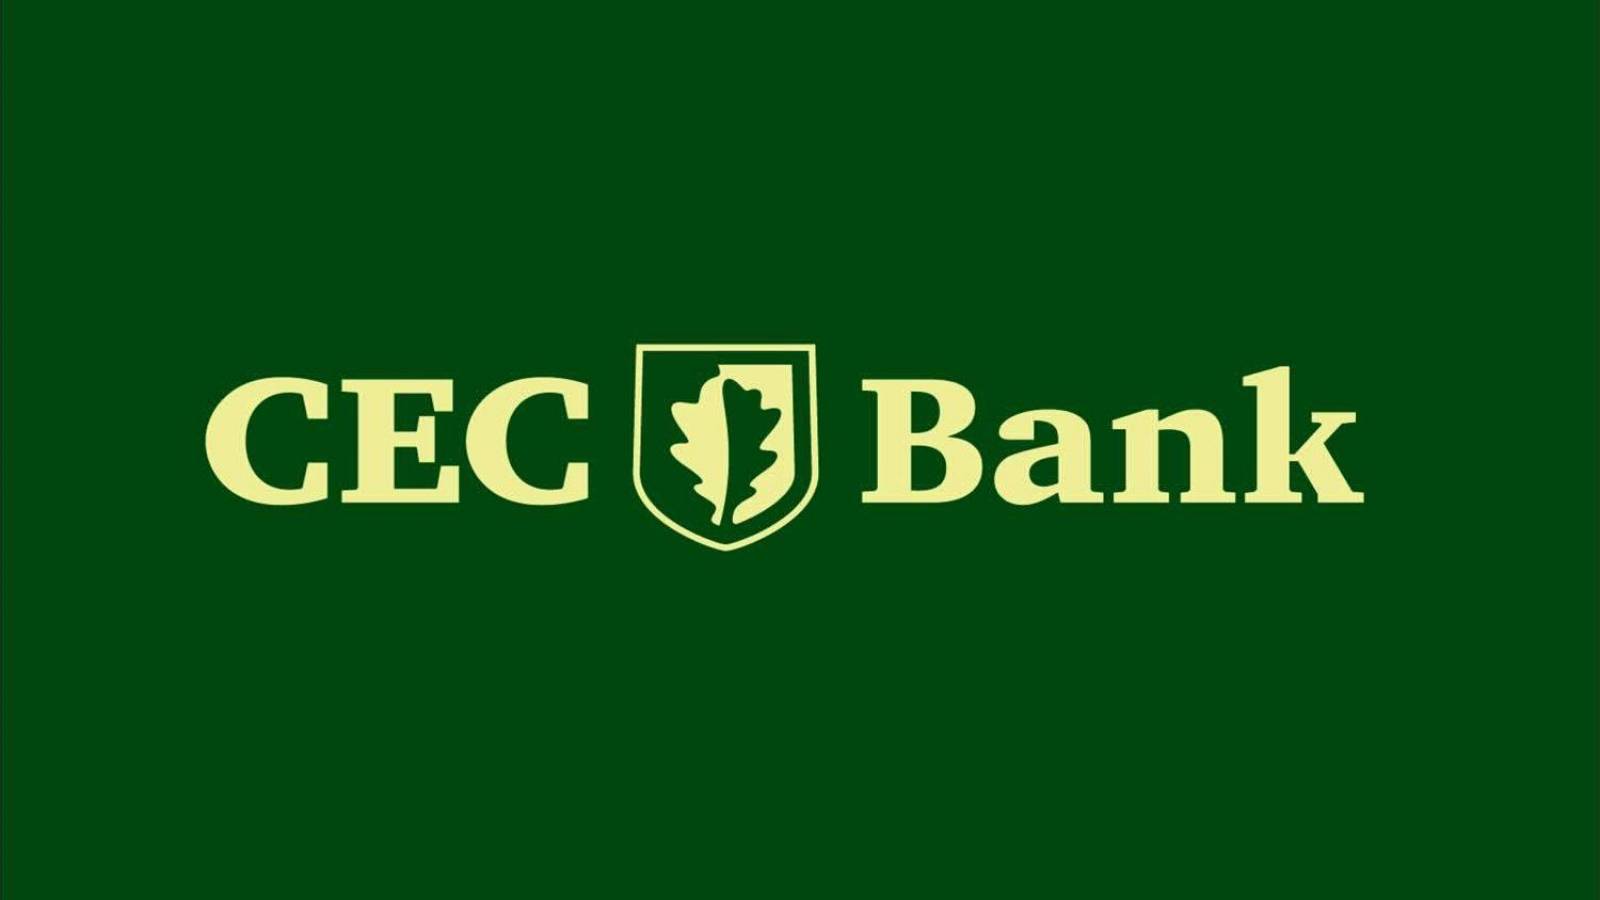 Oficjalny komunikat banku CEC wywołał niepokój w Rumunii